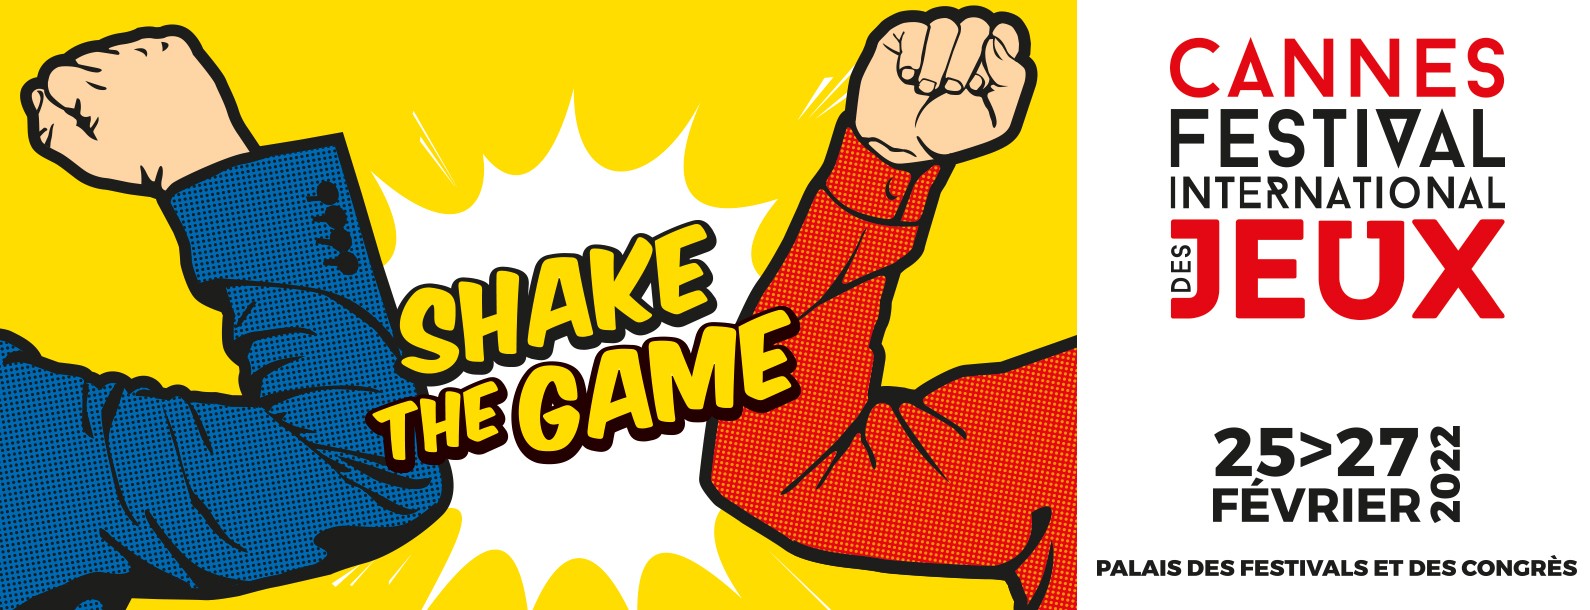 Une affiche de couverture pour le Festival International des Jeux de Cannes 2022 avec des bras poings levés marqué shake the game